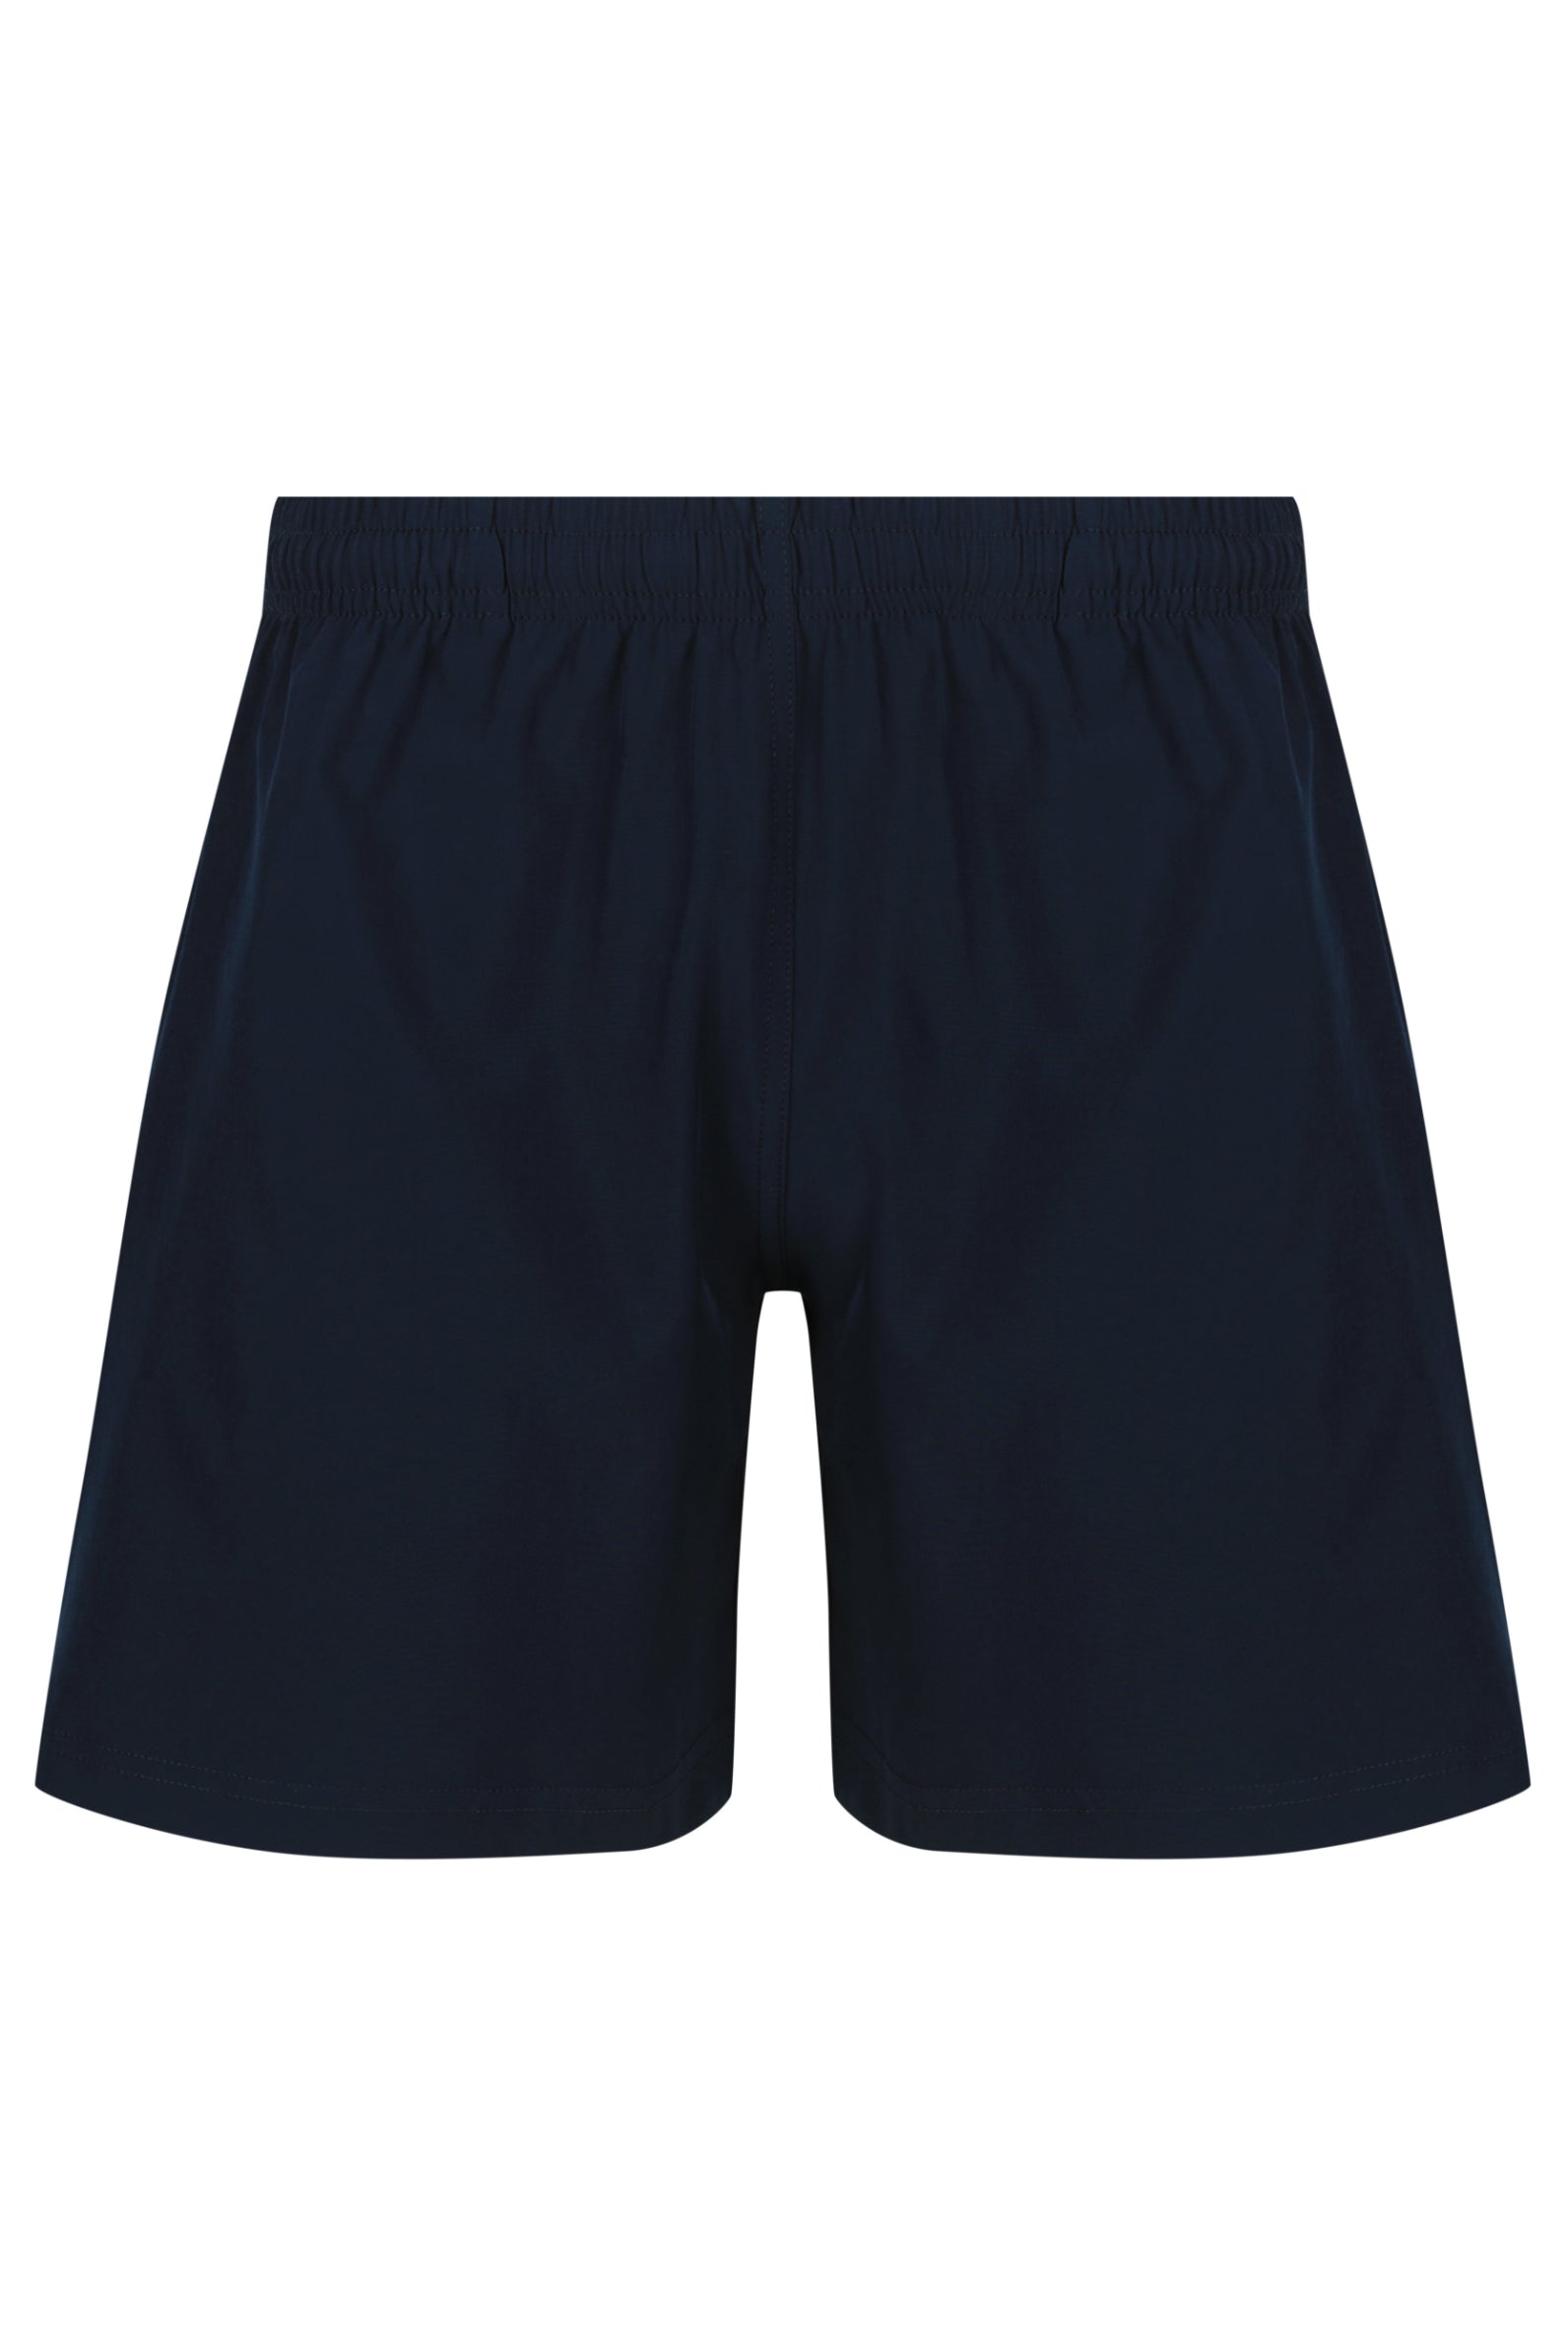 Kids School Shorts - Navy